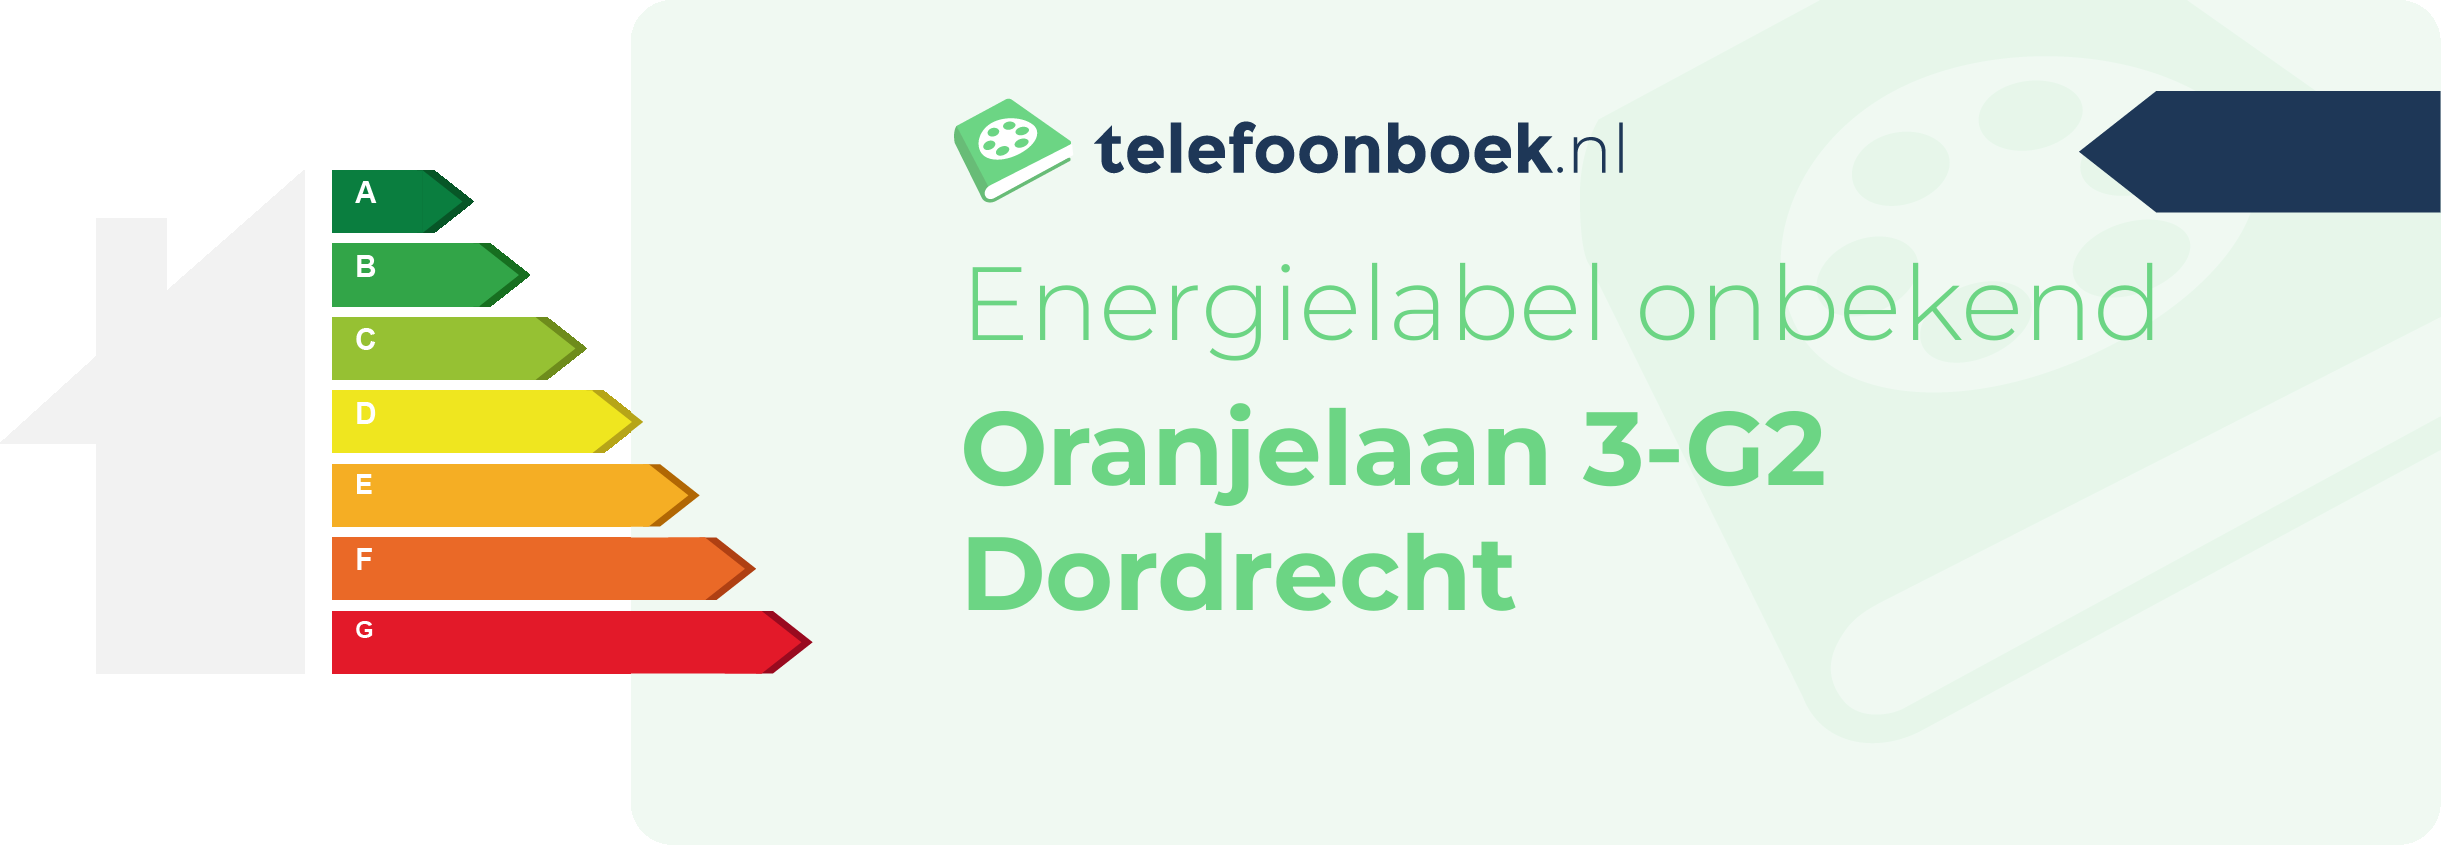 Energielabel Oranjelaan 3-G2 Dordrecht